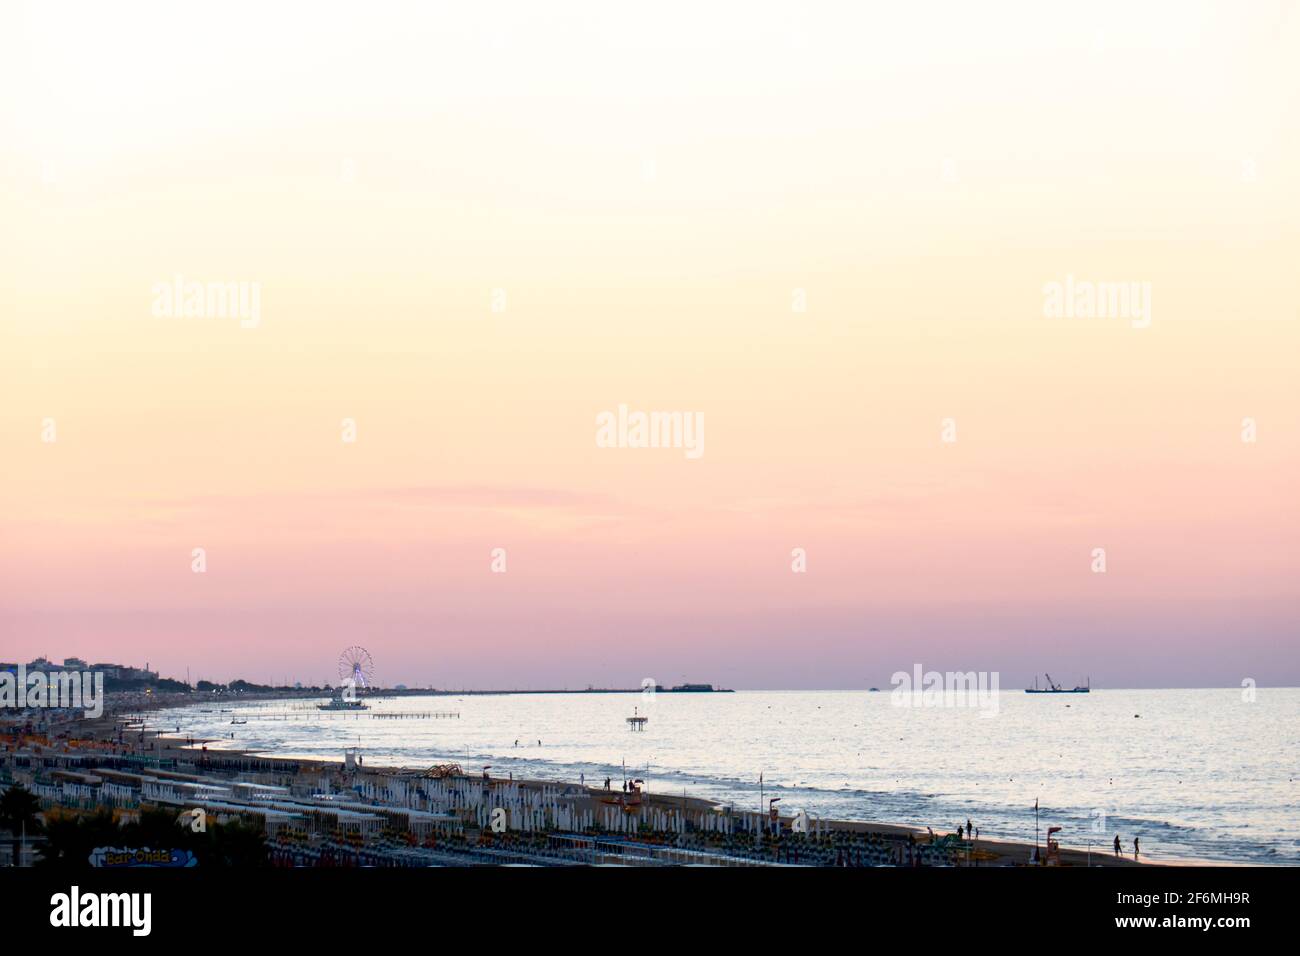 La côte Romagna de Riccione à Rimini pendant une sereine coucher de soleil avec ciel clair et couleurs vives Banque D'Images